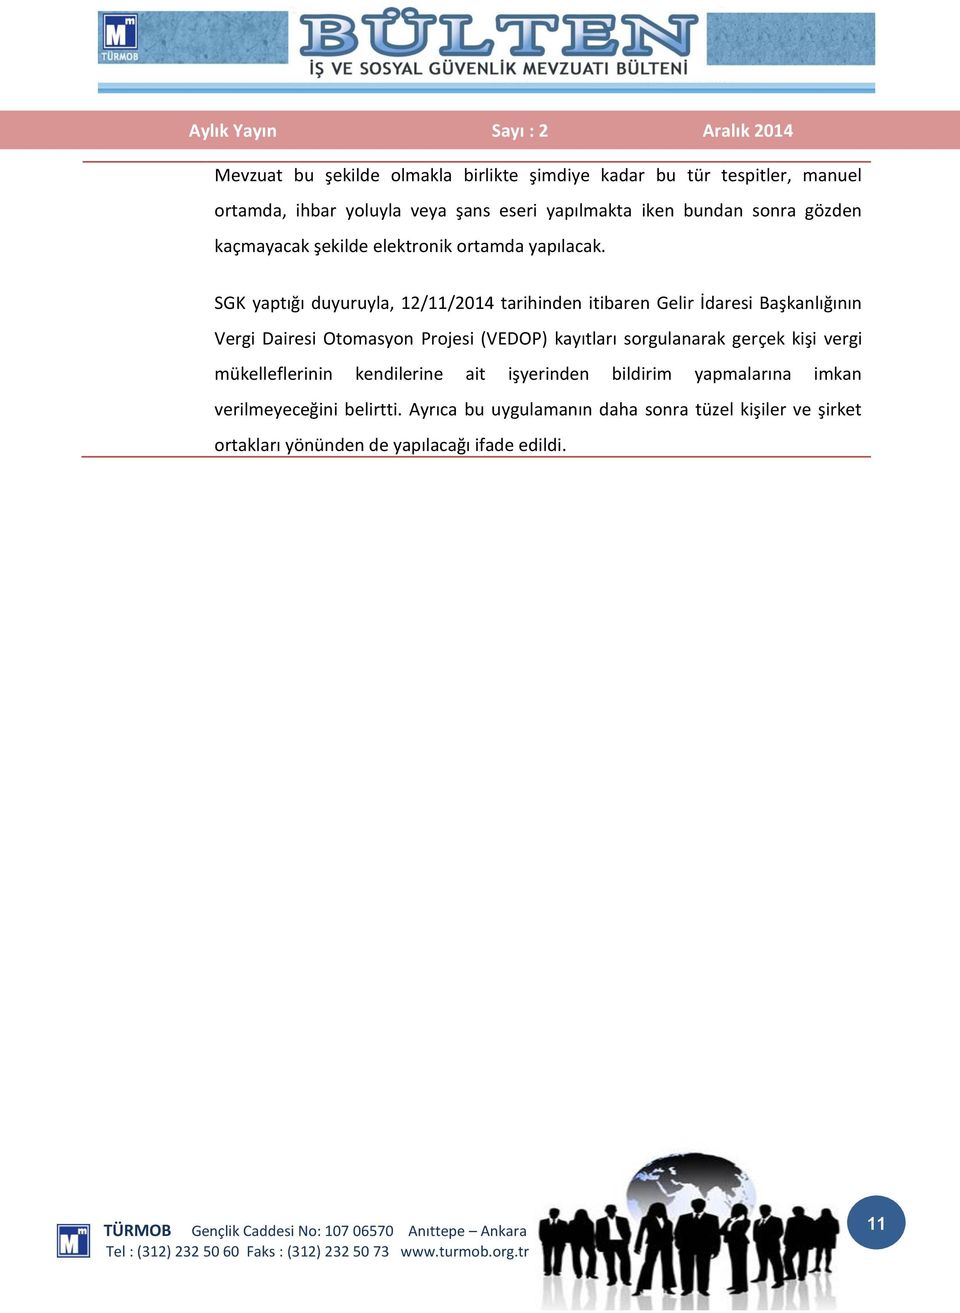 SGK yaptığı duyuruyla, 12/11/2014 tarihinden itibaren Gelir İdaresi Başkanlığının Vergi Dairesi Otomasyon Projesi (VEDOP) kayıtları